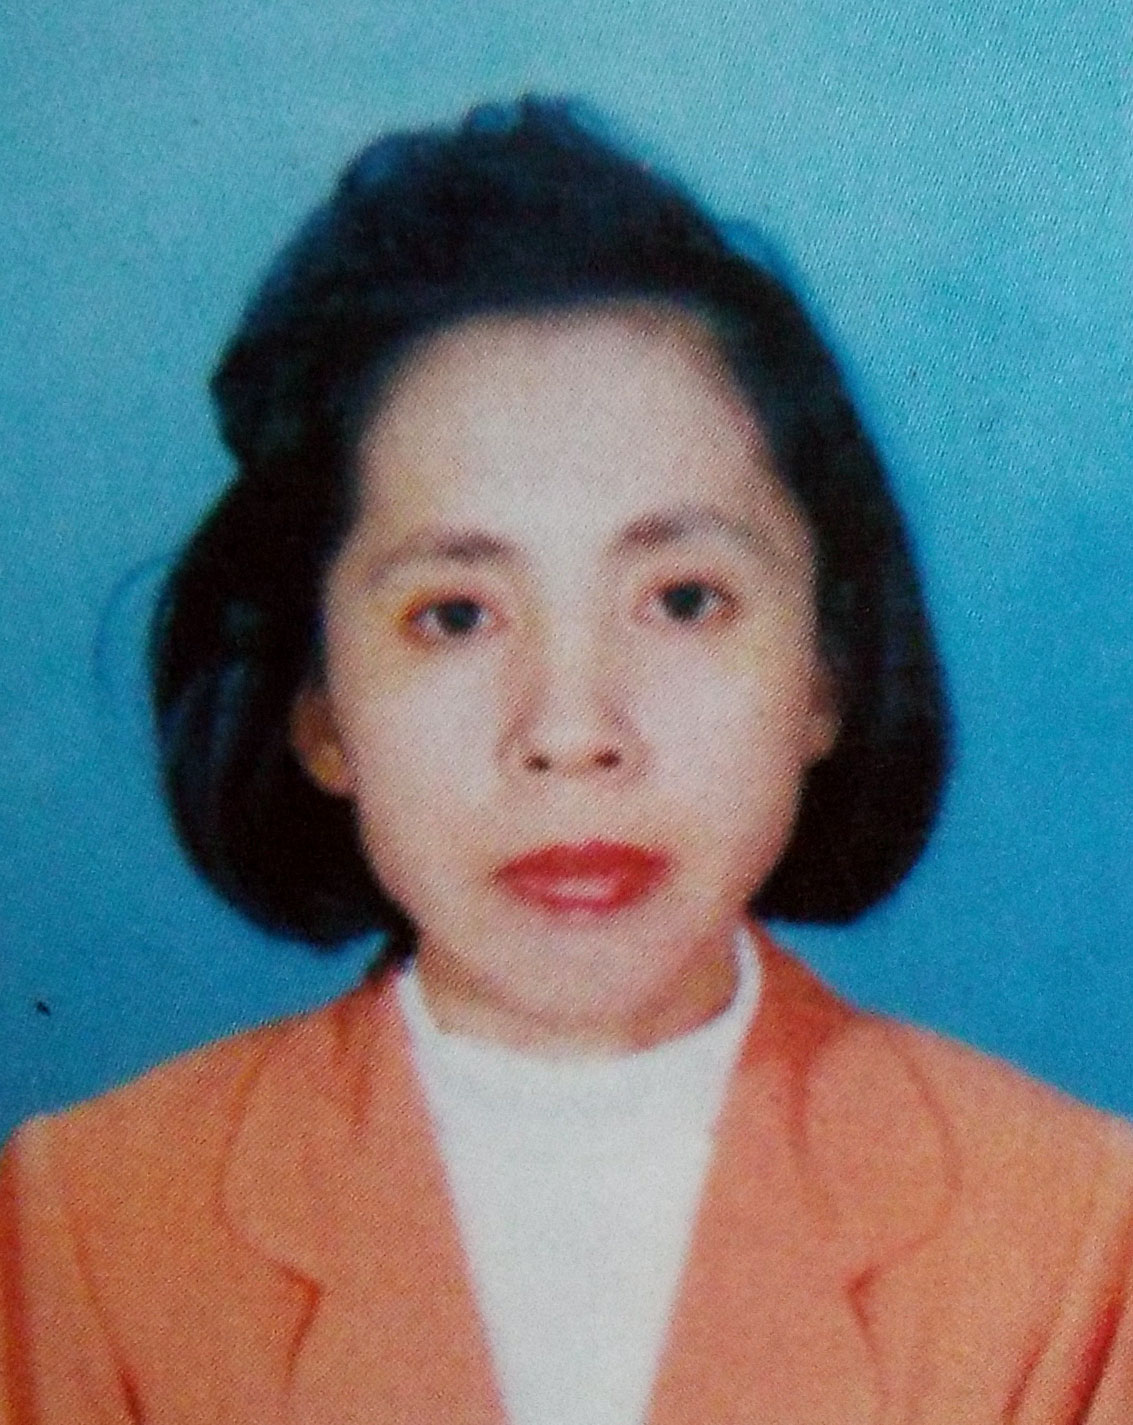 Là hội viên Hội VHNT Lâm Đồng, chị Ngoãn đã xuất bản 2 tập thơ, trong đó nhiều bài thơ viết về cha mẹ mình